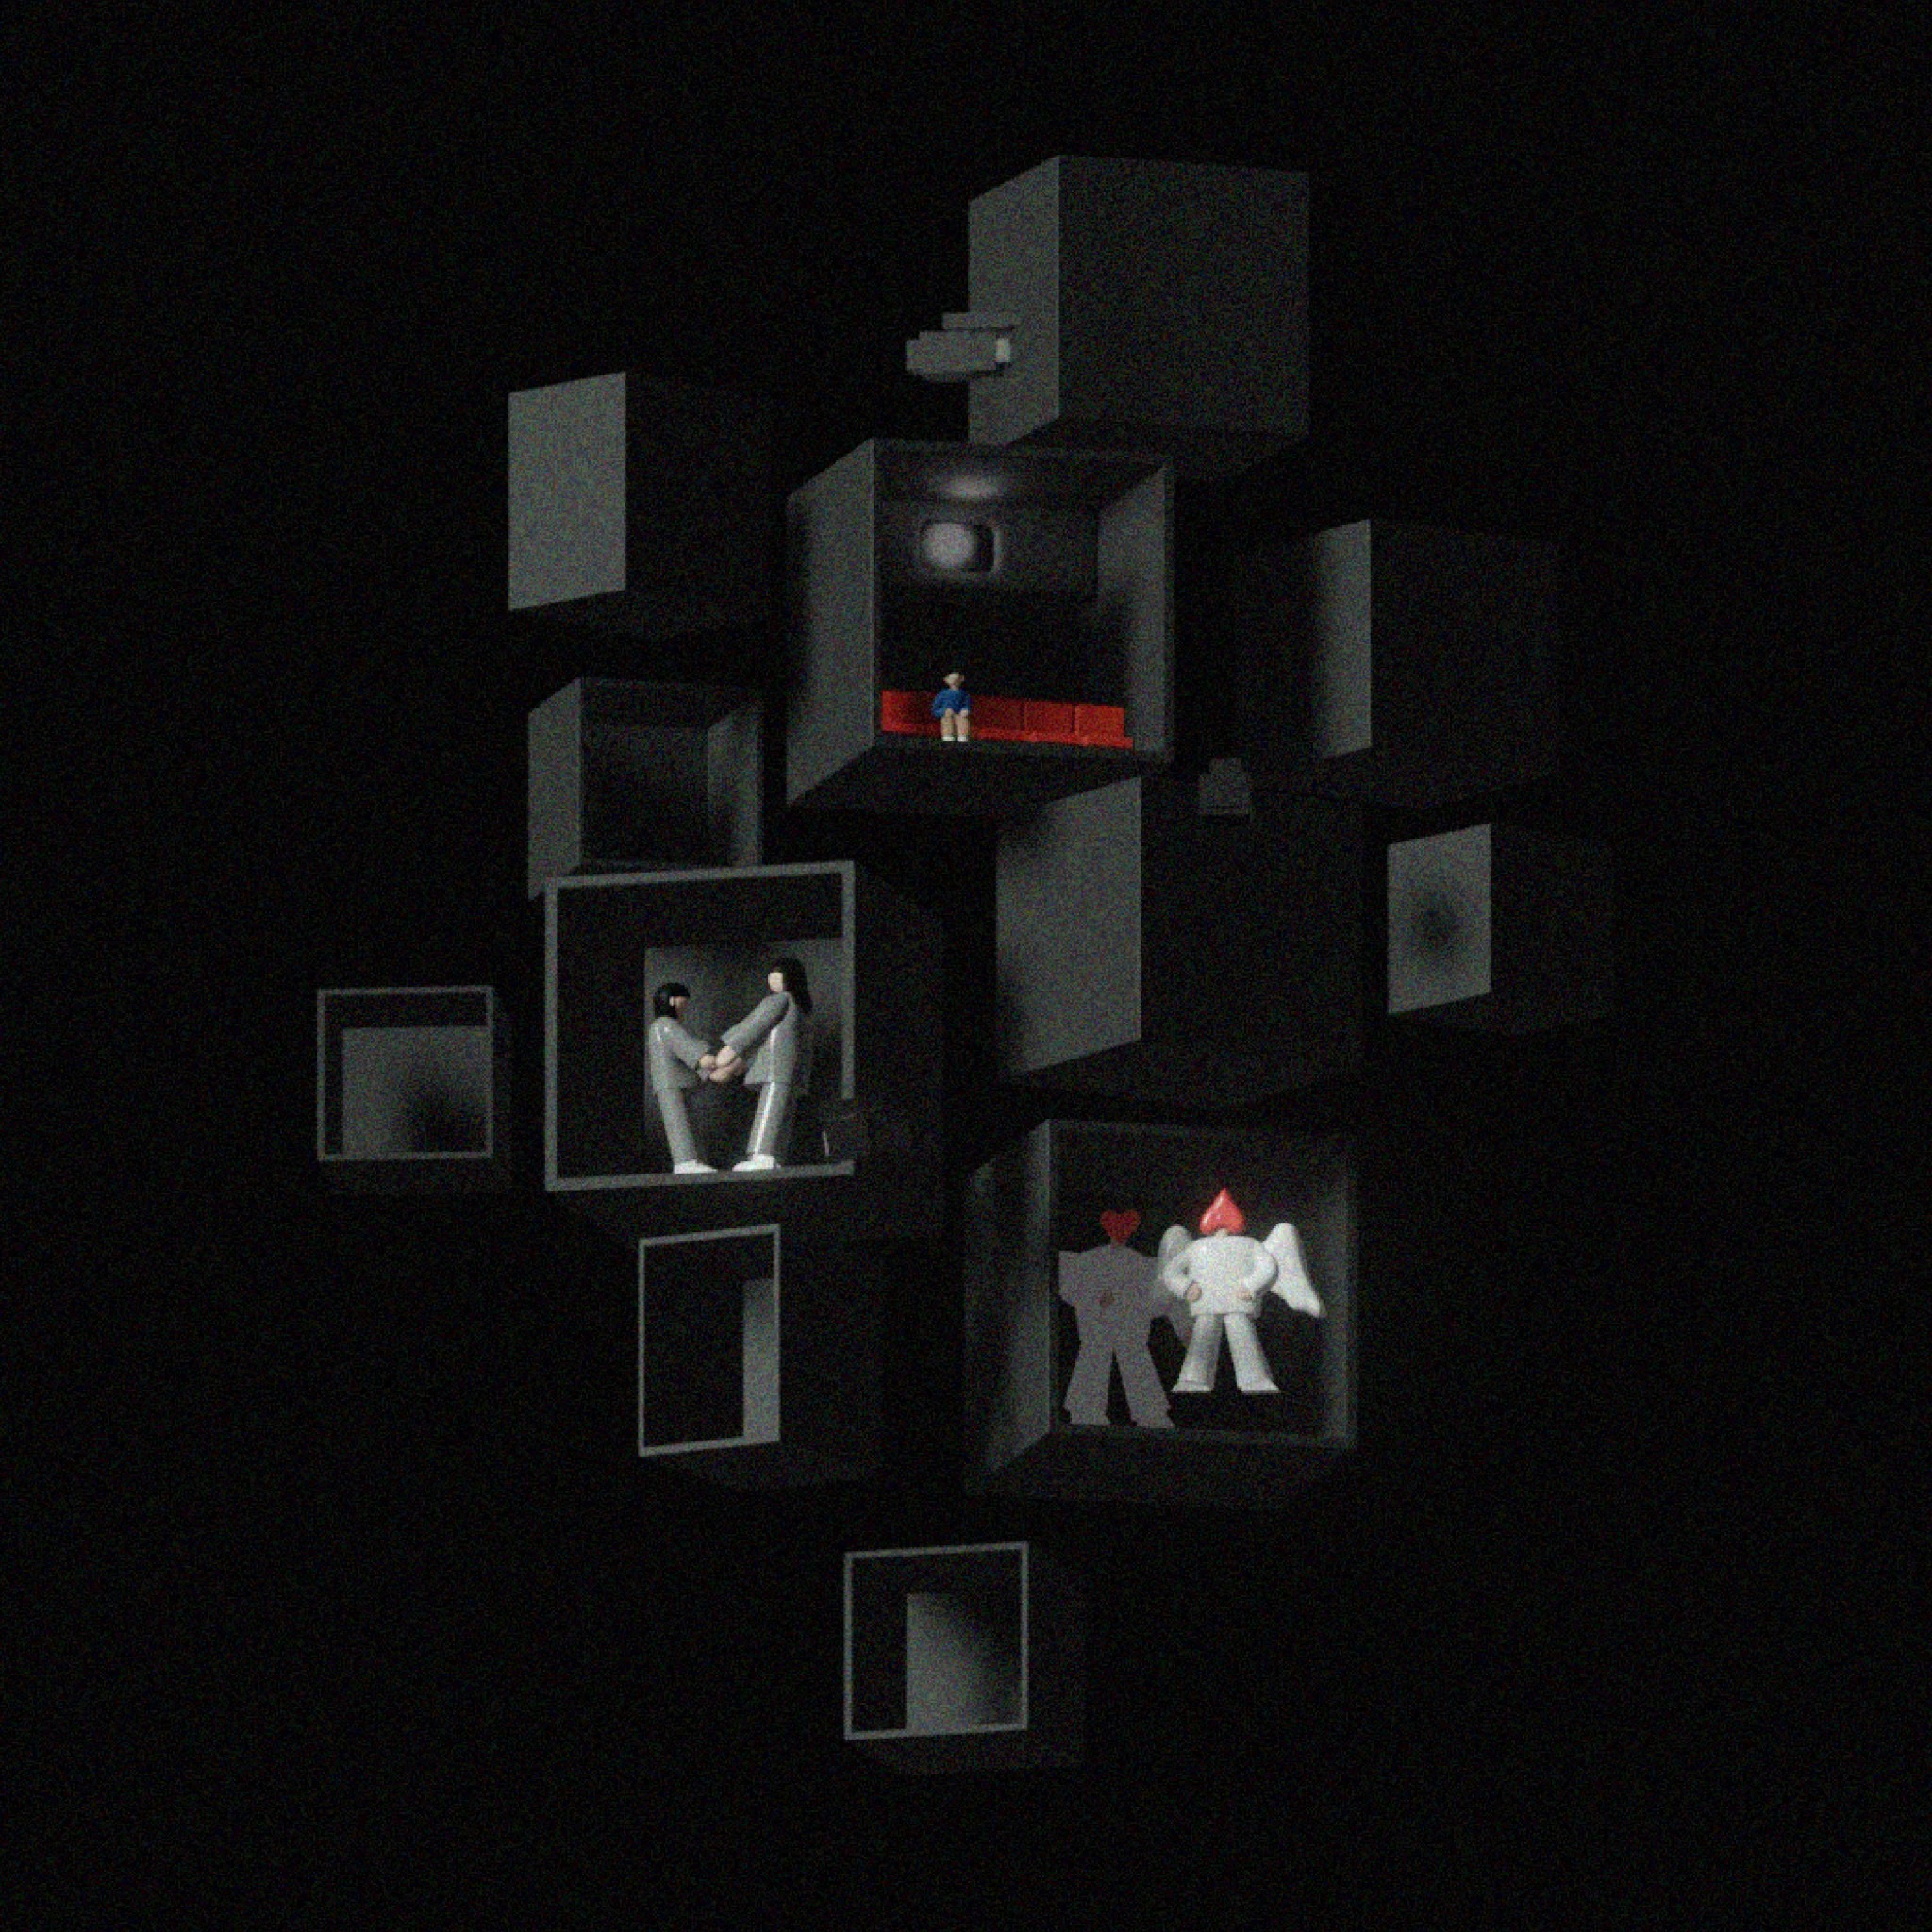 黒い背景に、3Dオブジェクト風のイラスト。いくつもの部屋が合体したようなオブジェクト。部屋にはひとや、変なキャラクターがいる。